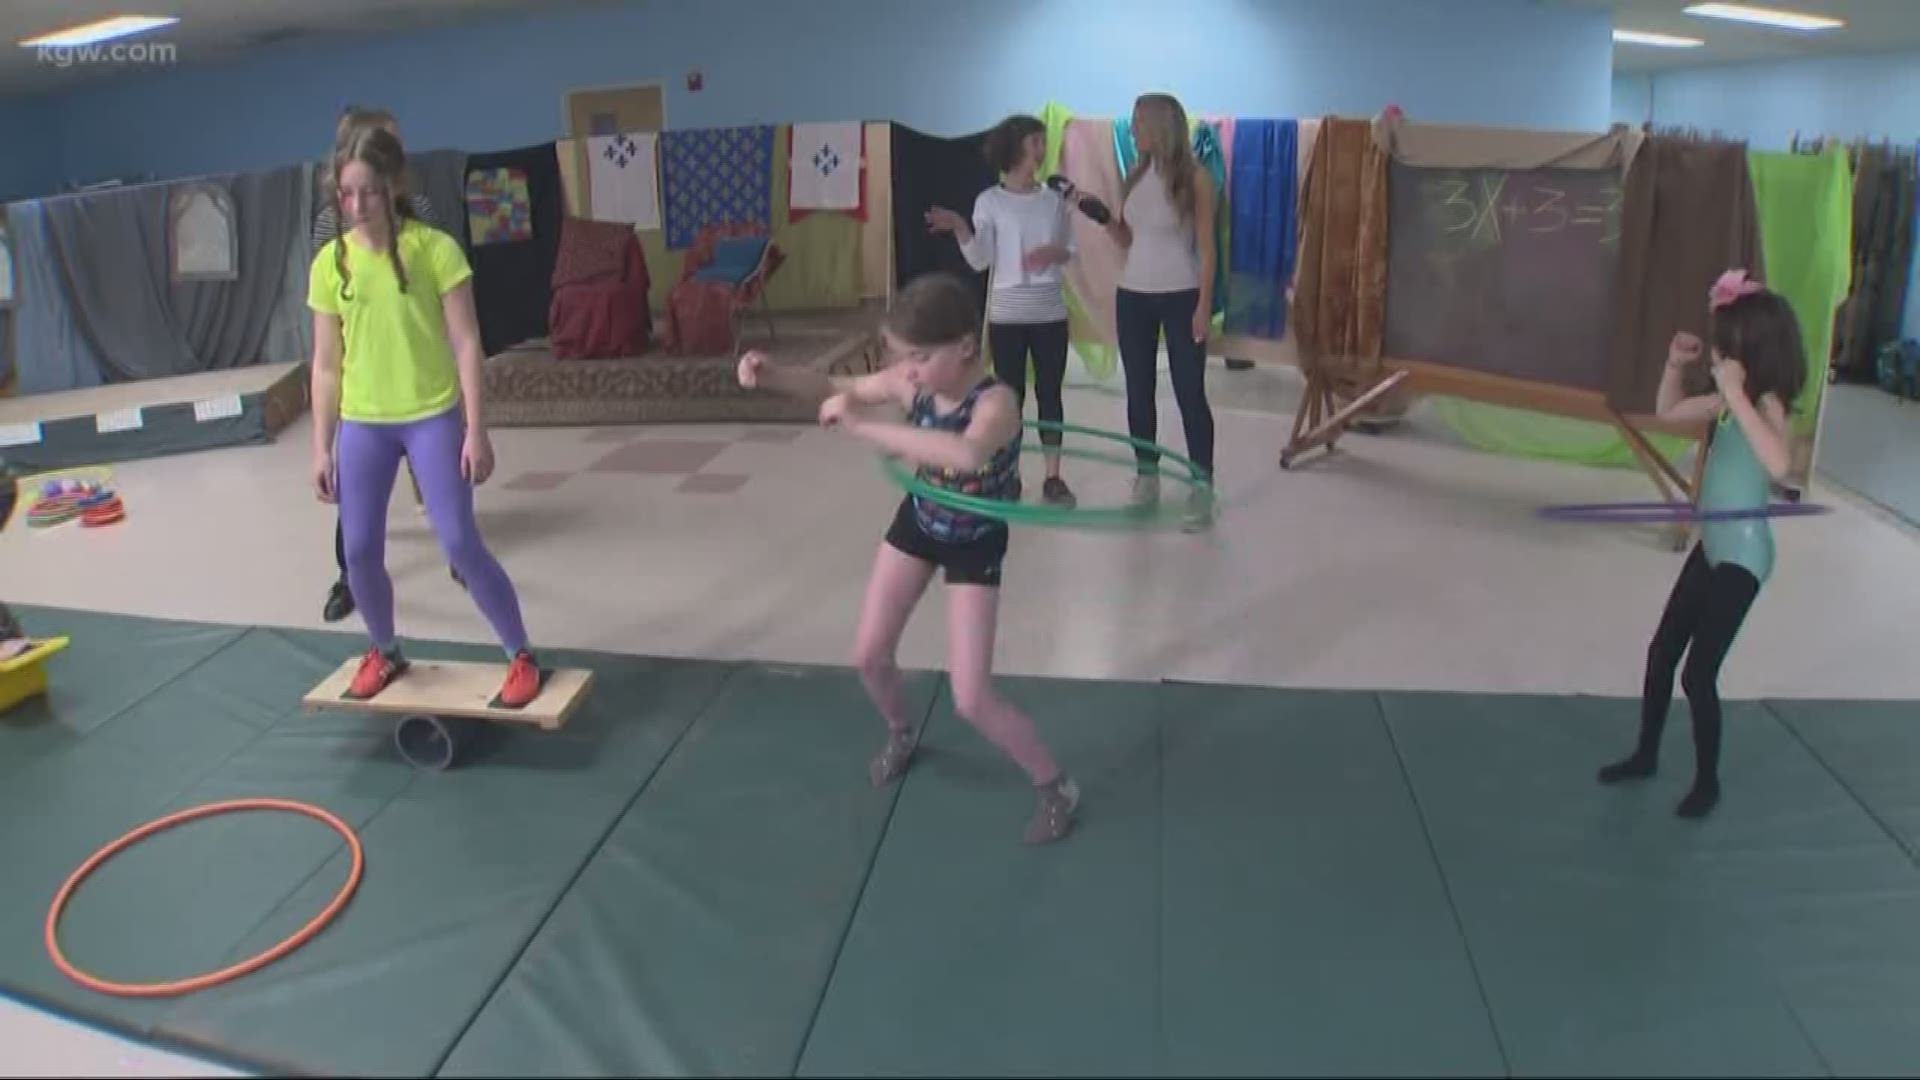 Getting kids active in after-school program.